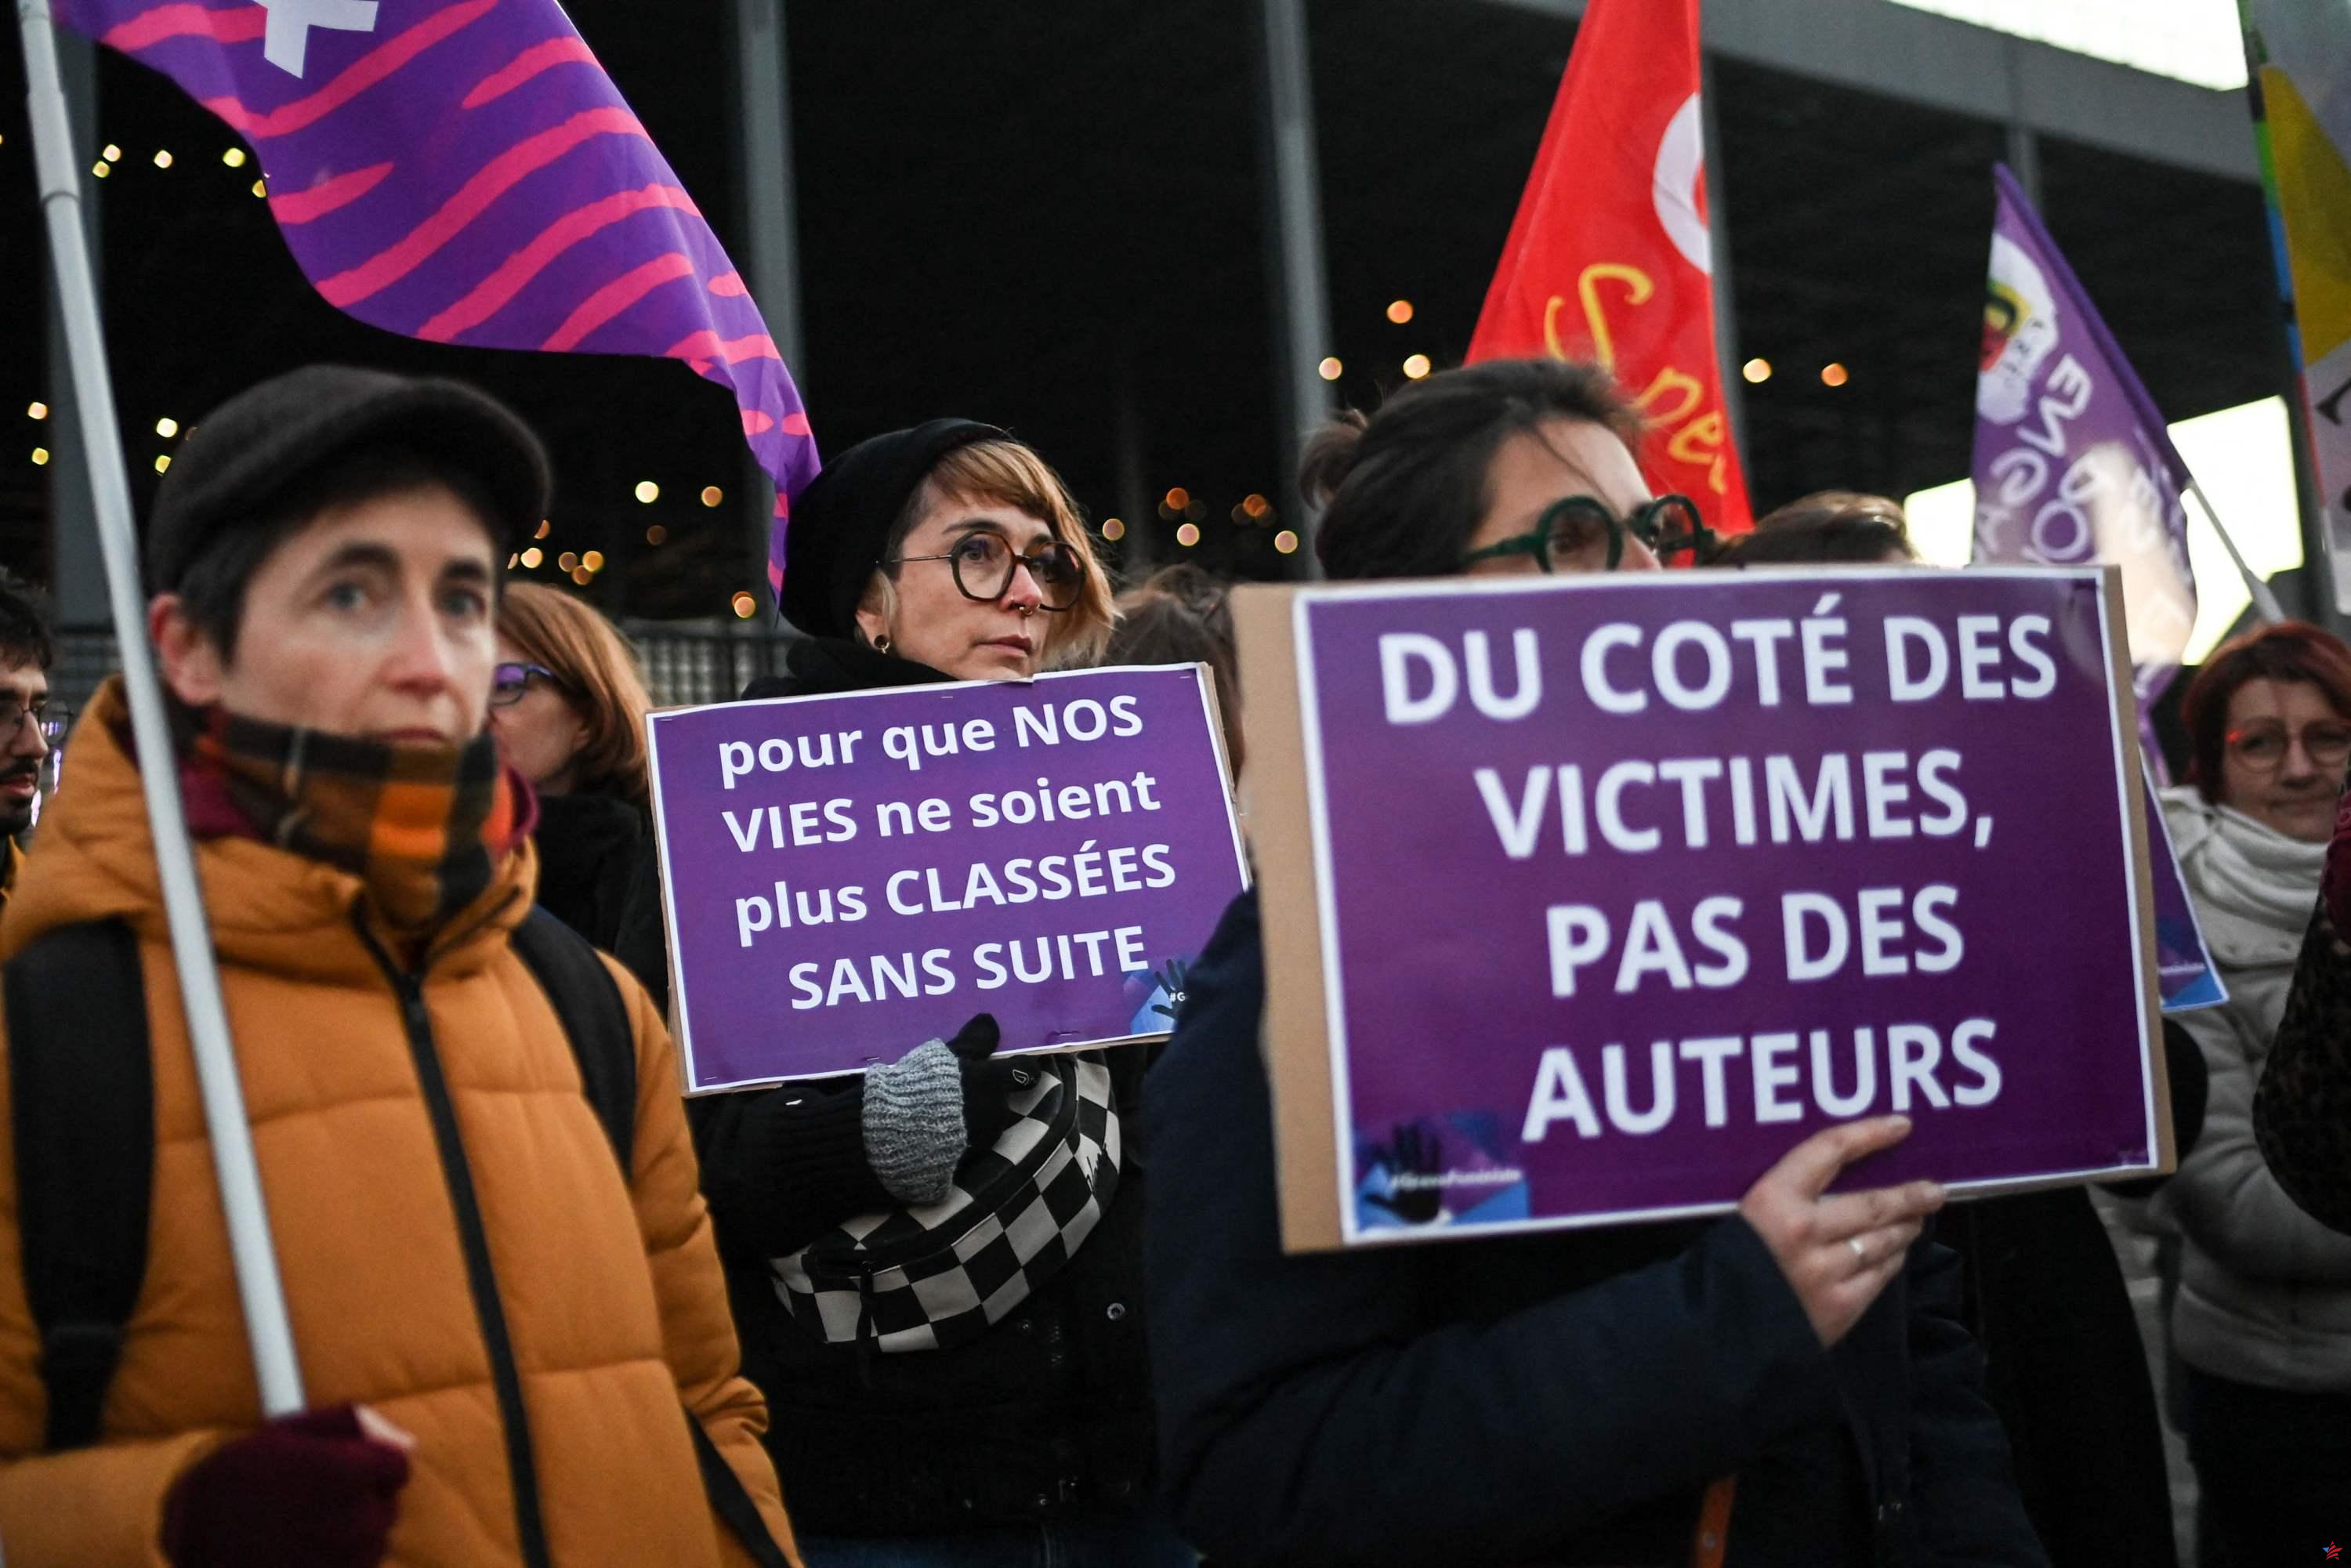 Asunto Depardieu: manifestaciones en varias ciudades de Francia contra el “viejo mundo”